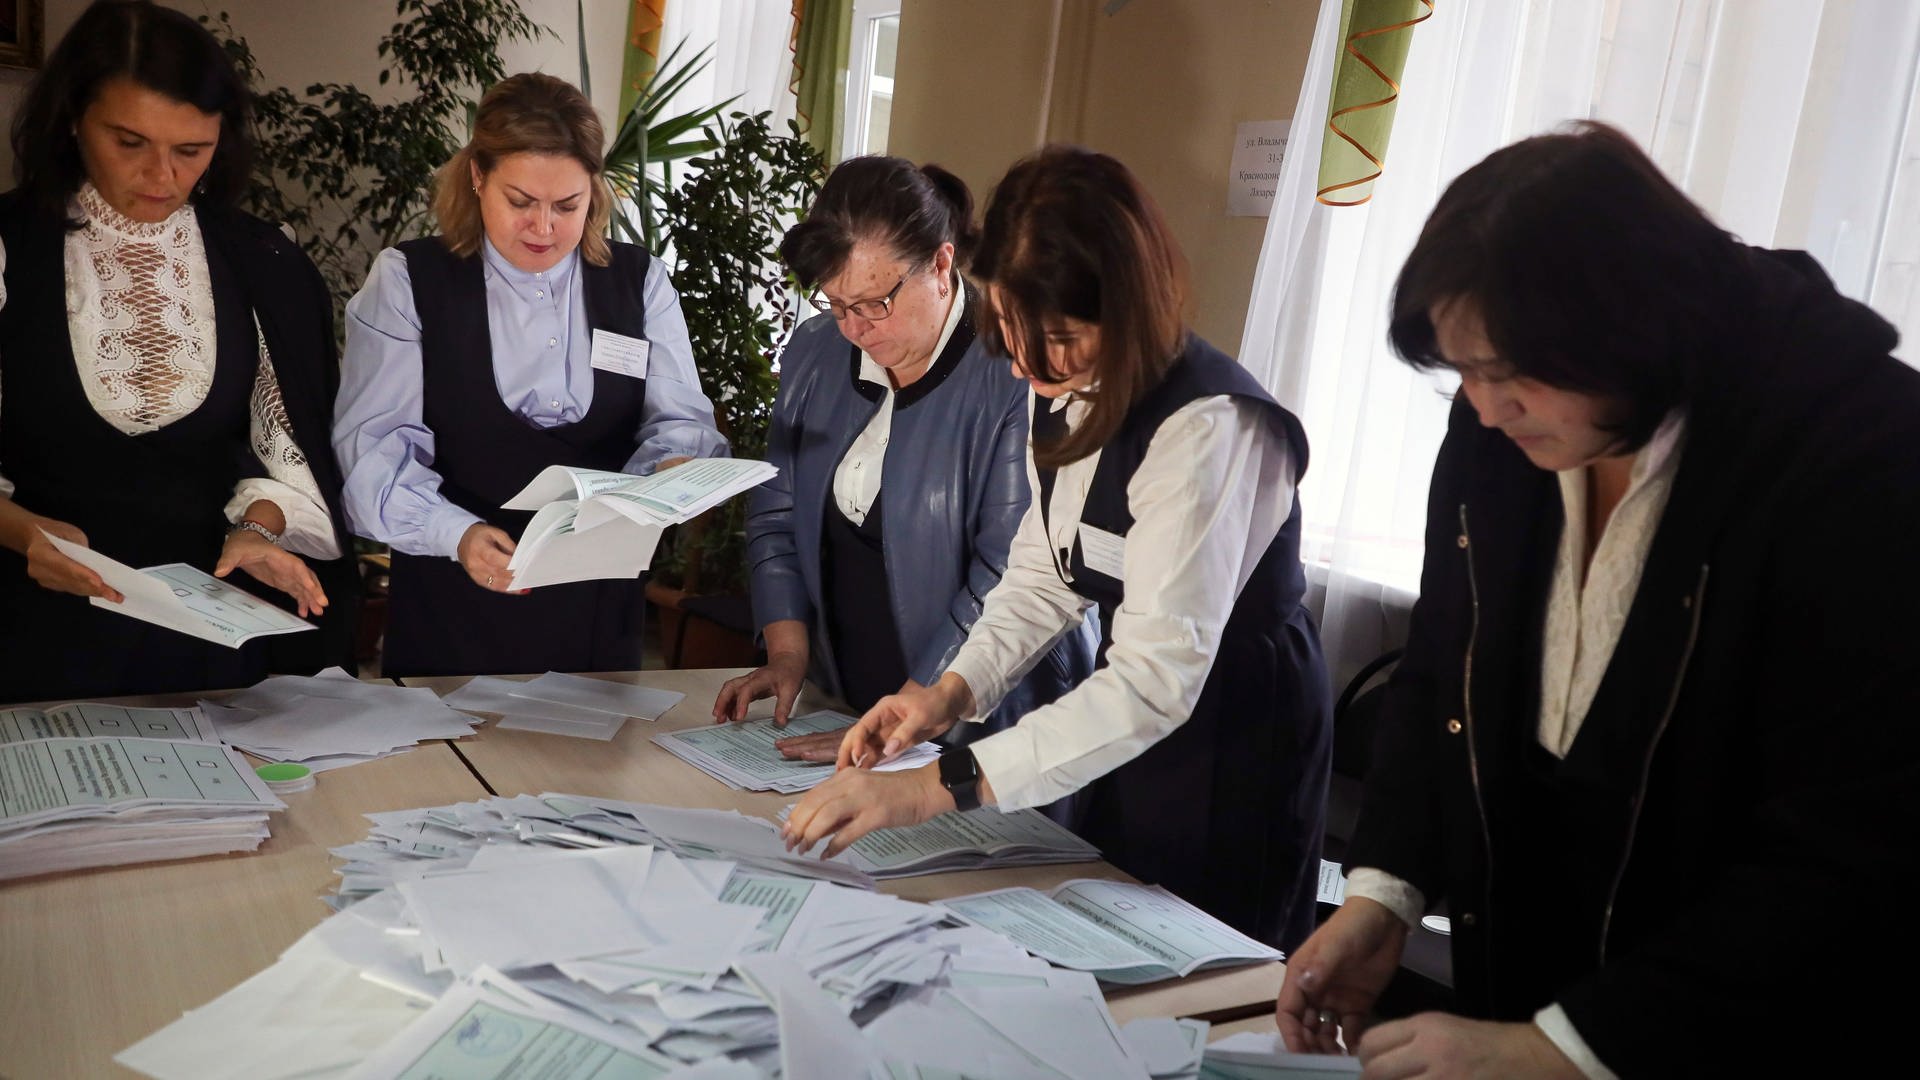 Mitglieder einer Wahlkommission zählen die Stimmzettel nach dem Scheinreferendum in einem Wahllokal in Donezk, der Hauptstadt der von Russland unterstützten und von Separatisten kontrollierten Volksrepublik Donezk. (Foto: dpa Bildfunk, picture alliance/dpa/AP | Uncredited)